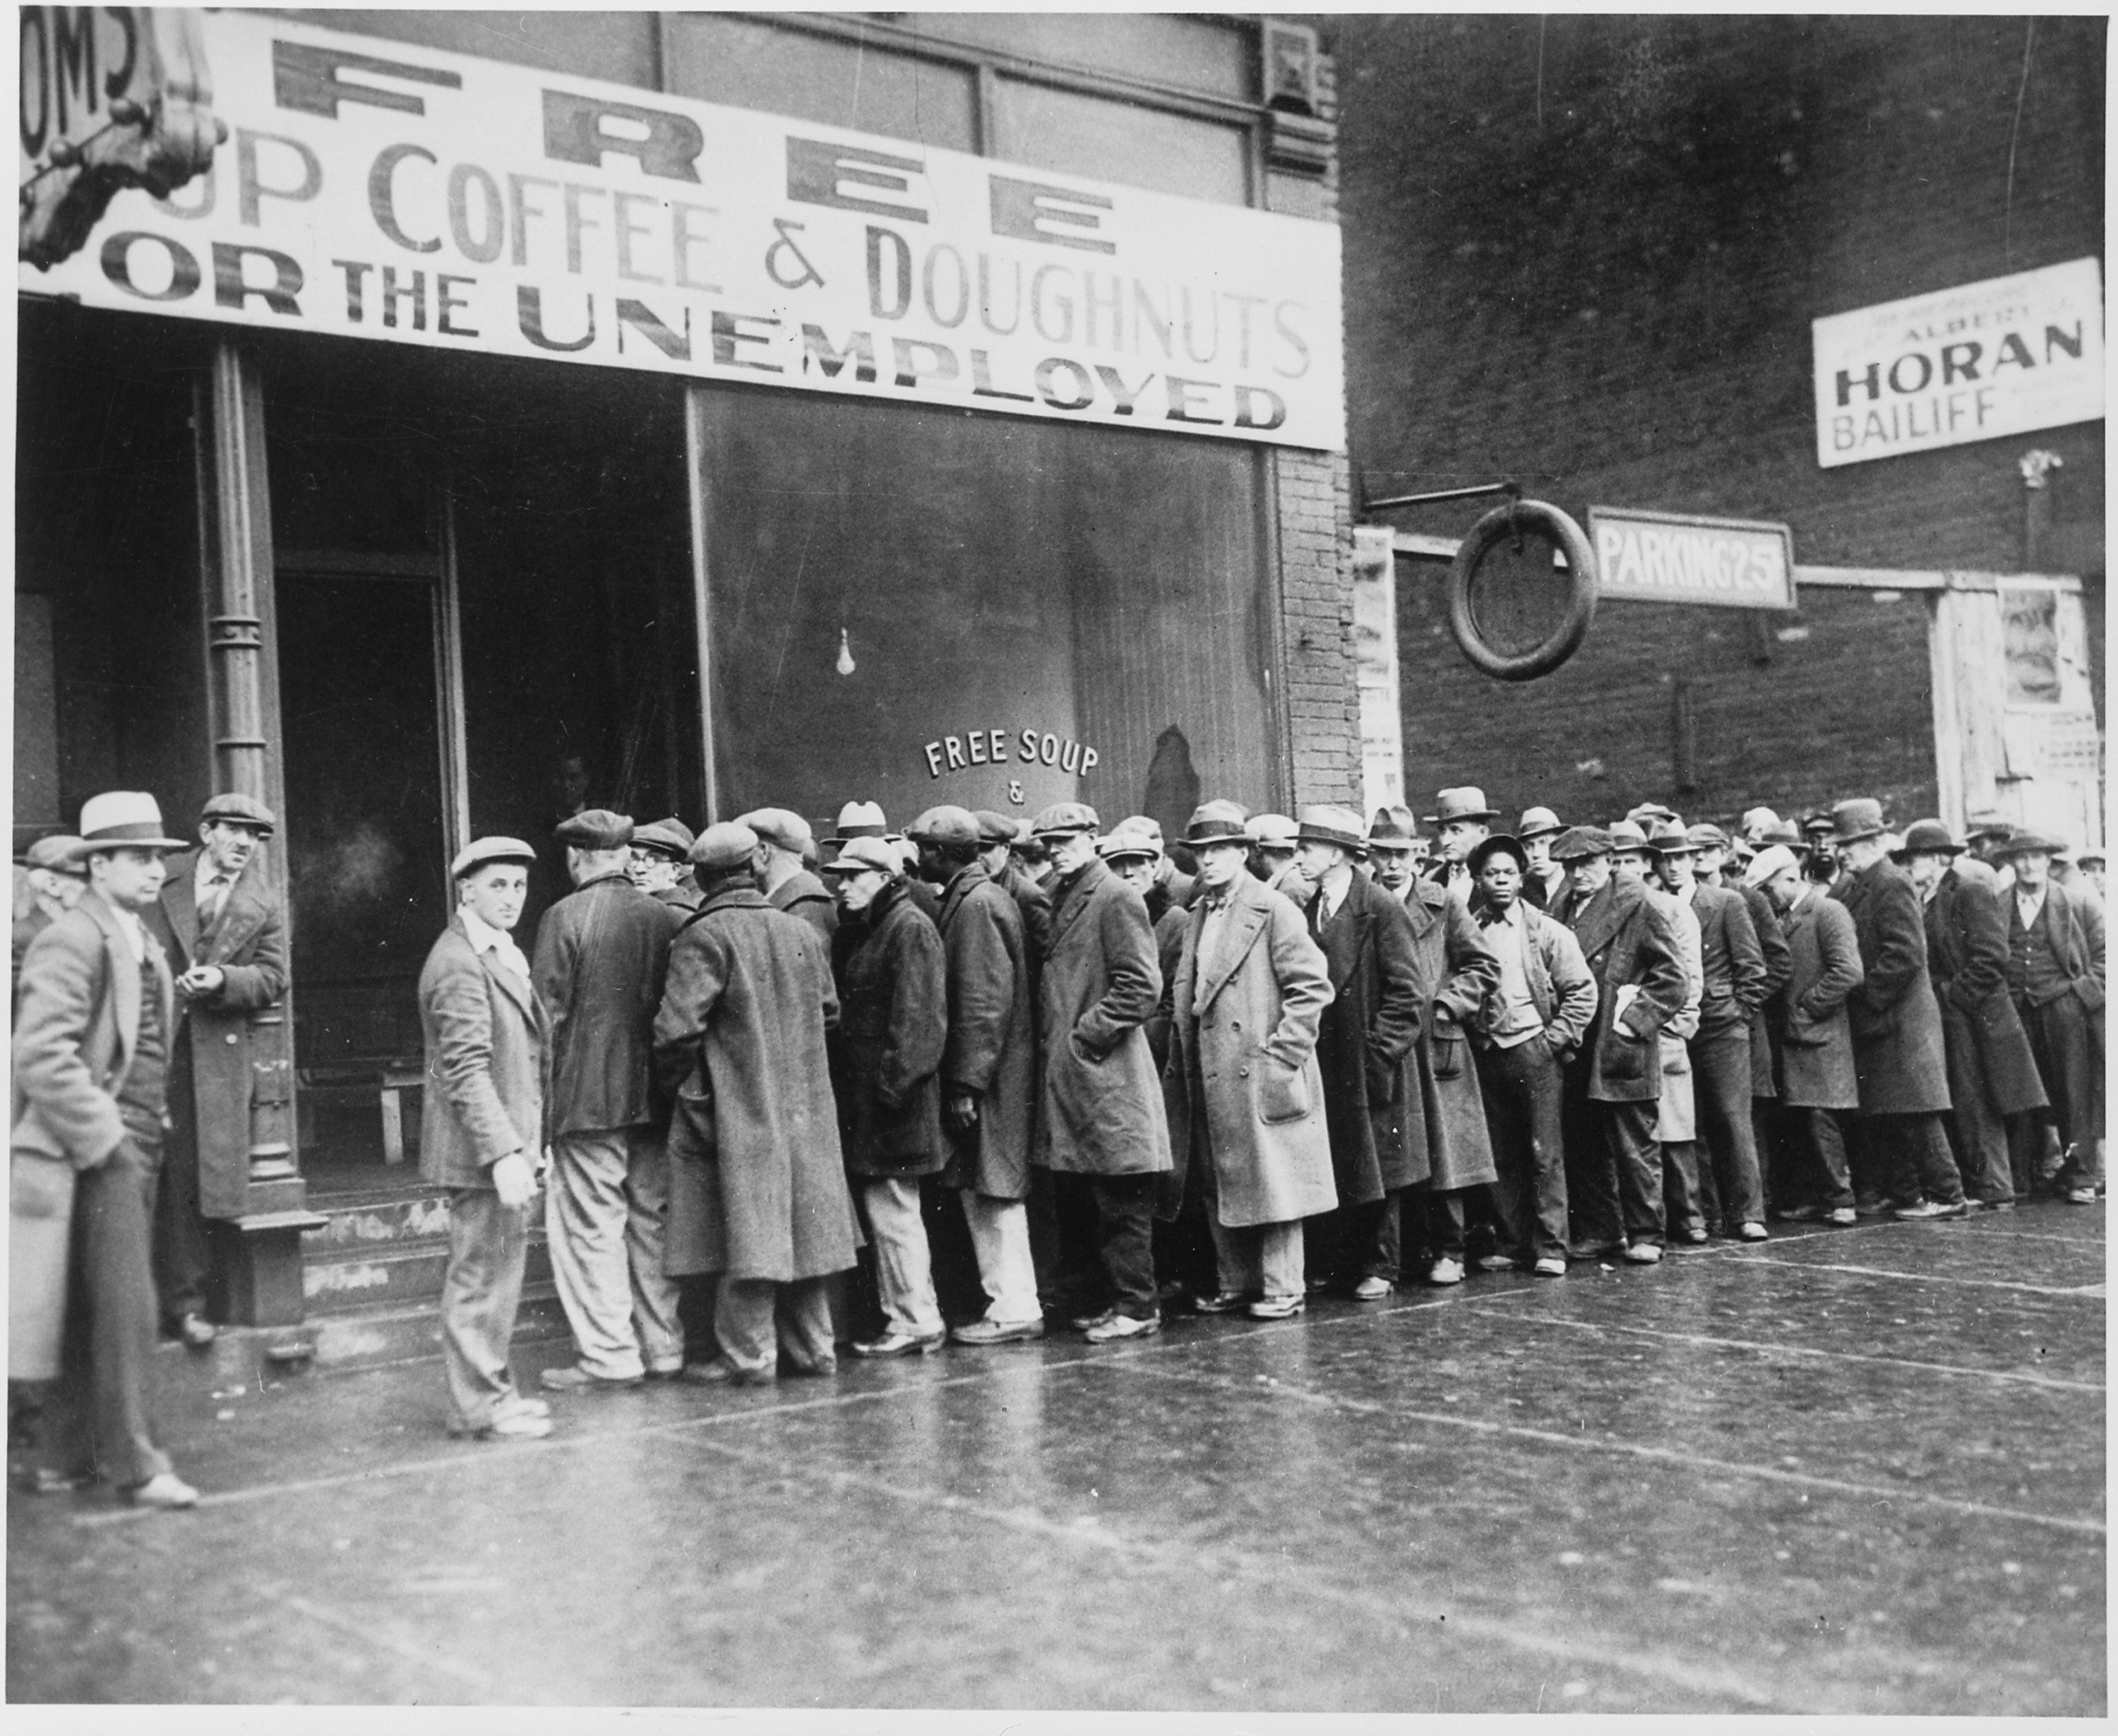 A száz éve nem látott munkanélküli válság